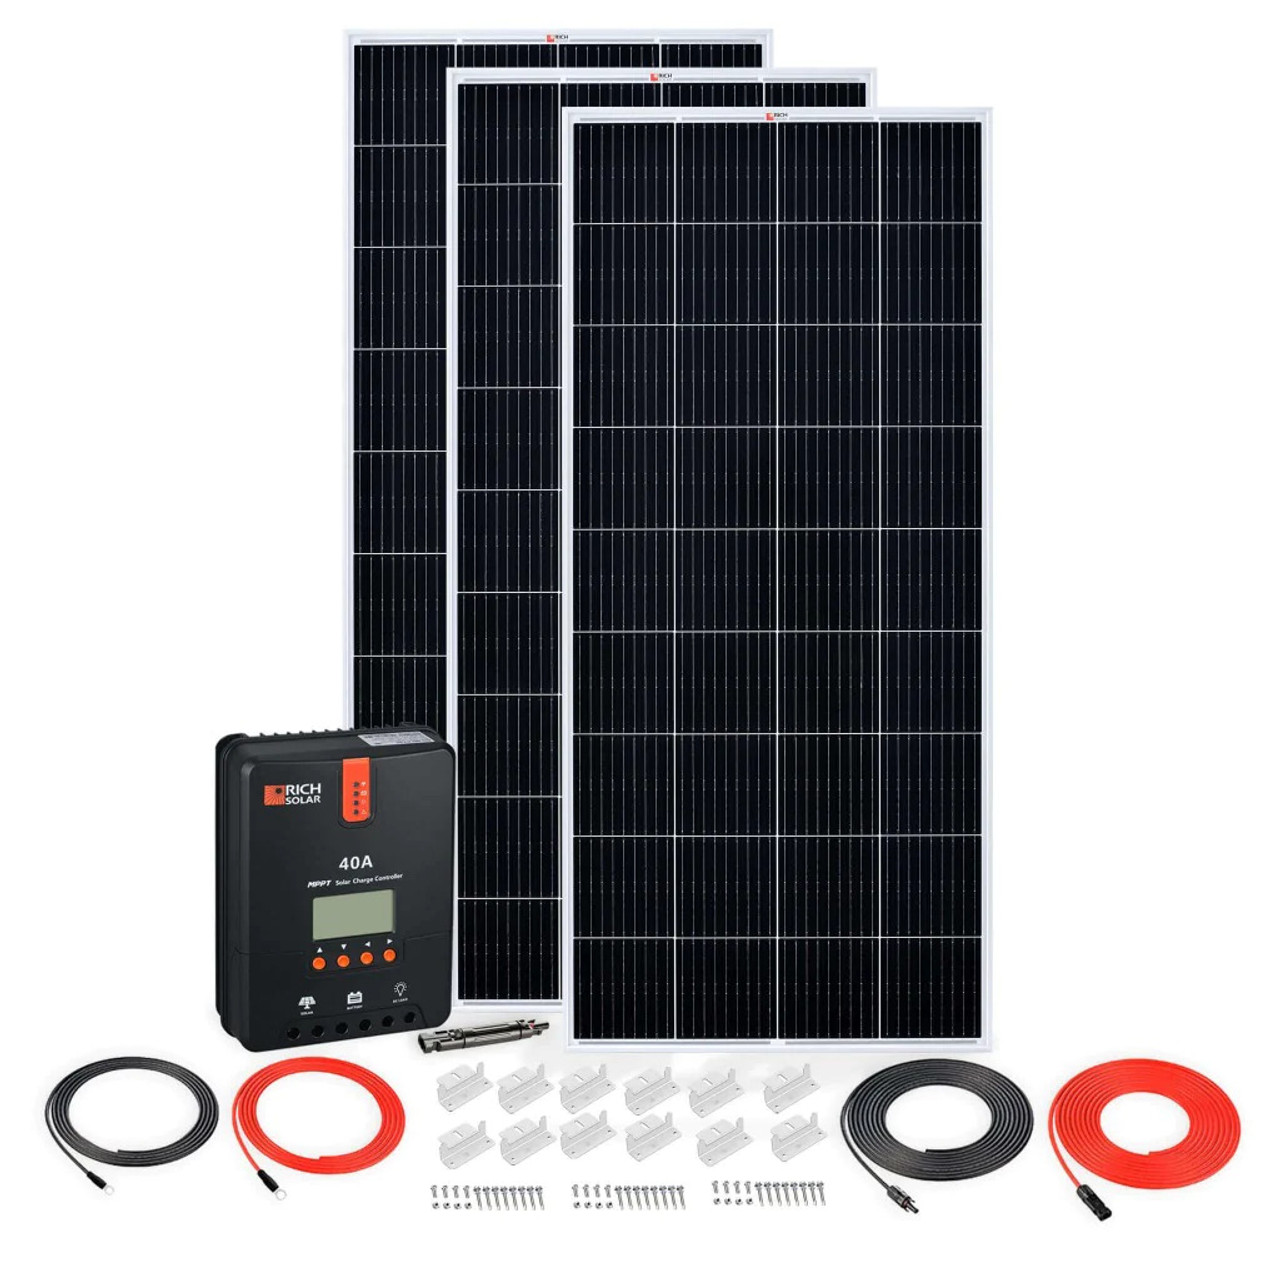 Kit solar 600 wh al dia+INSTALACION+GARANTIA 6 MESES - GTR SOLAR LTDA